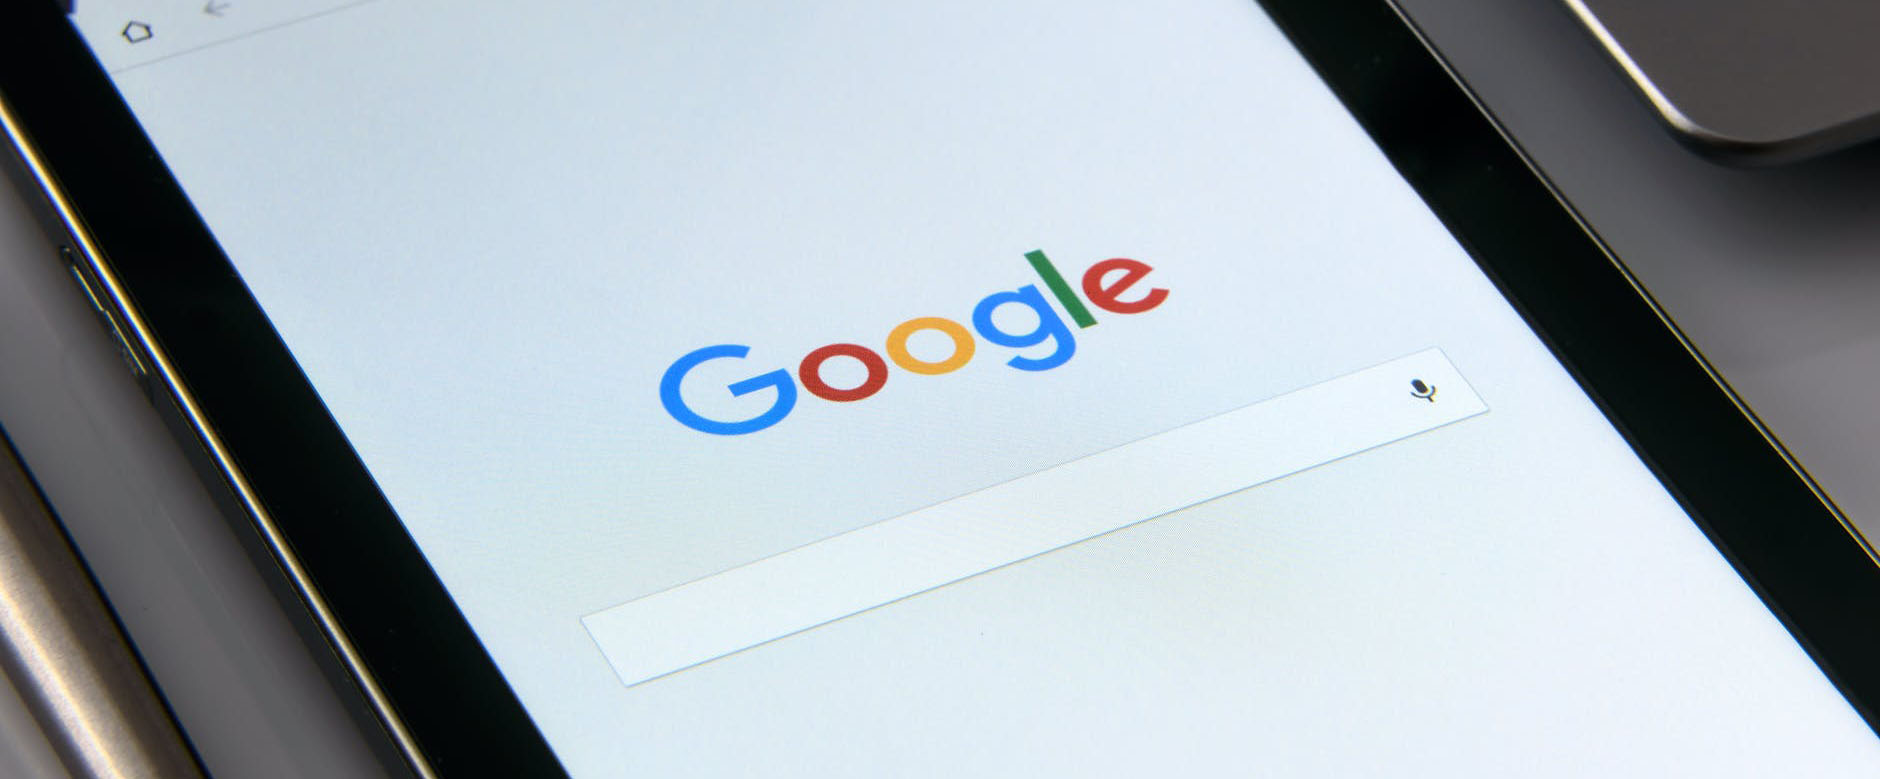 Google добавил больше информации о доменах в поисковую выдачу